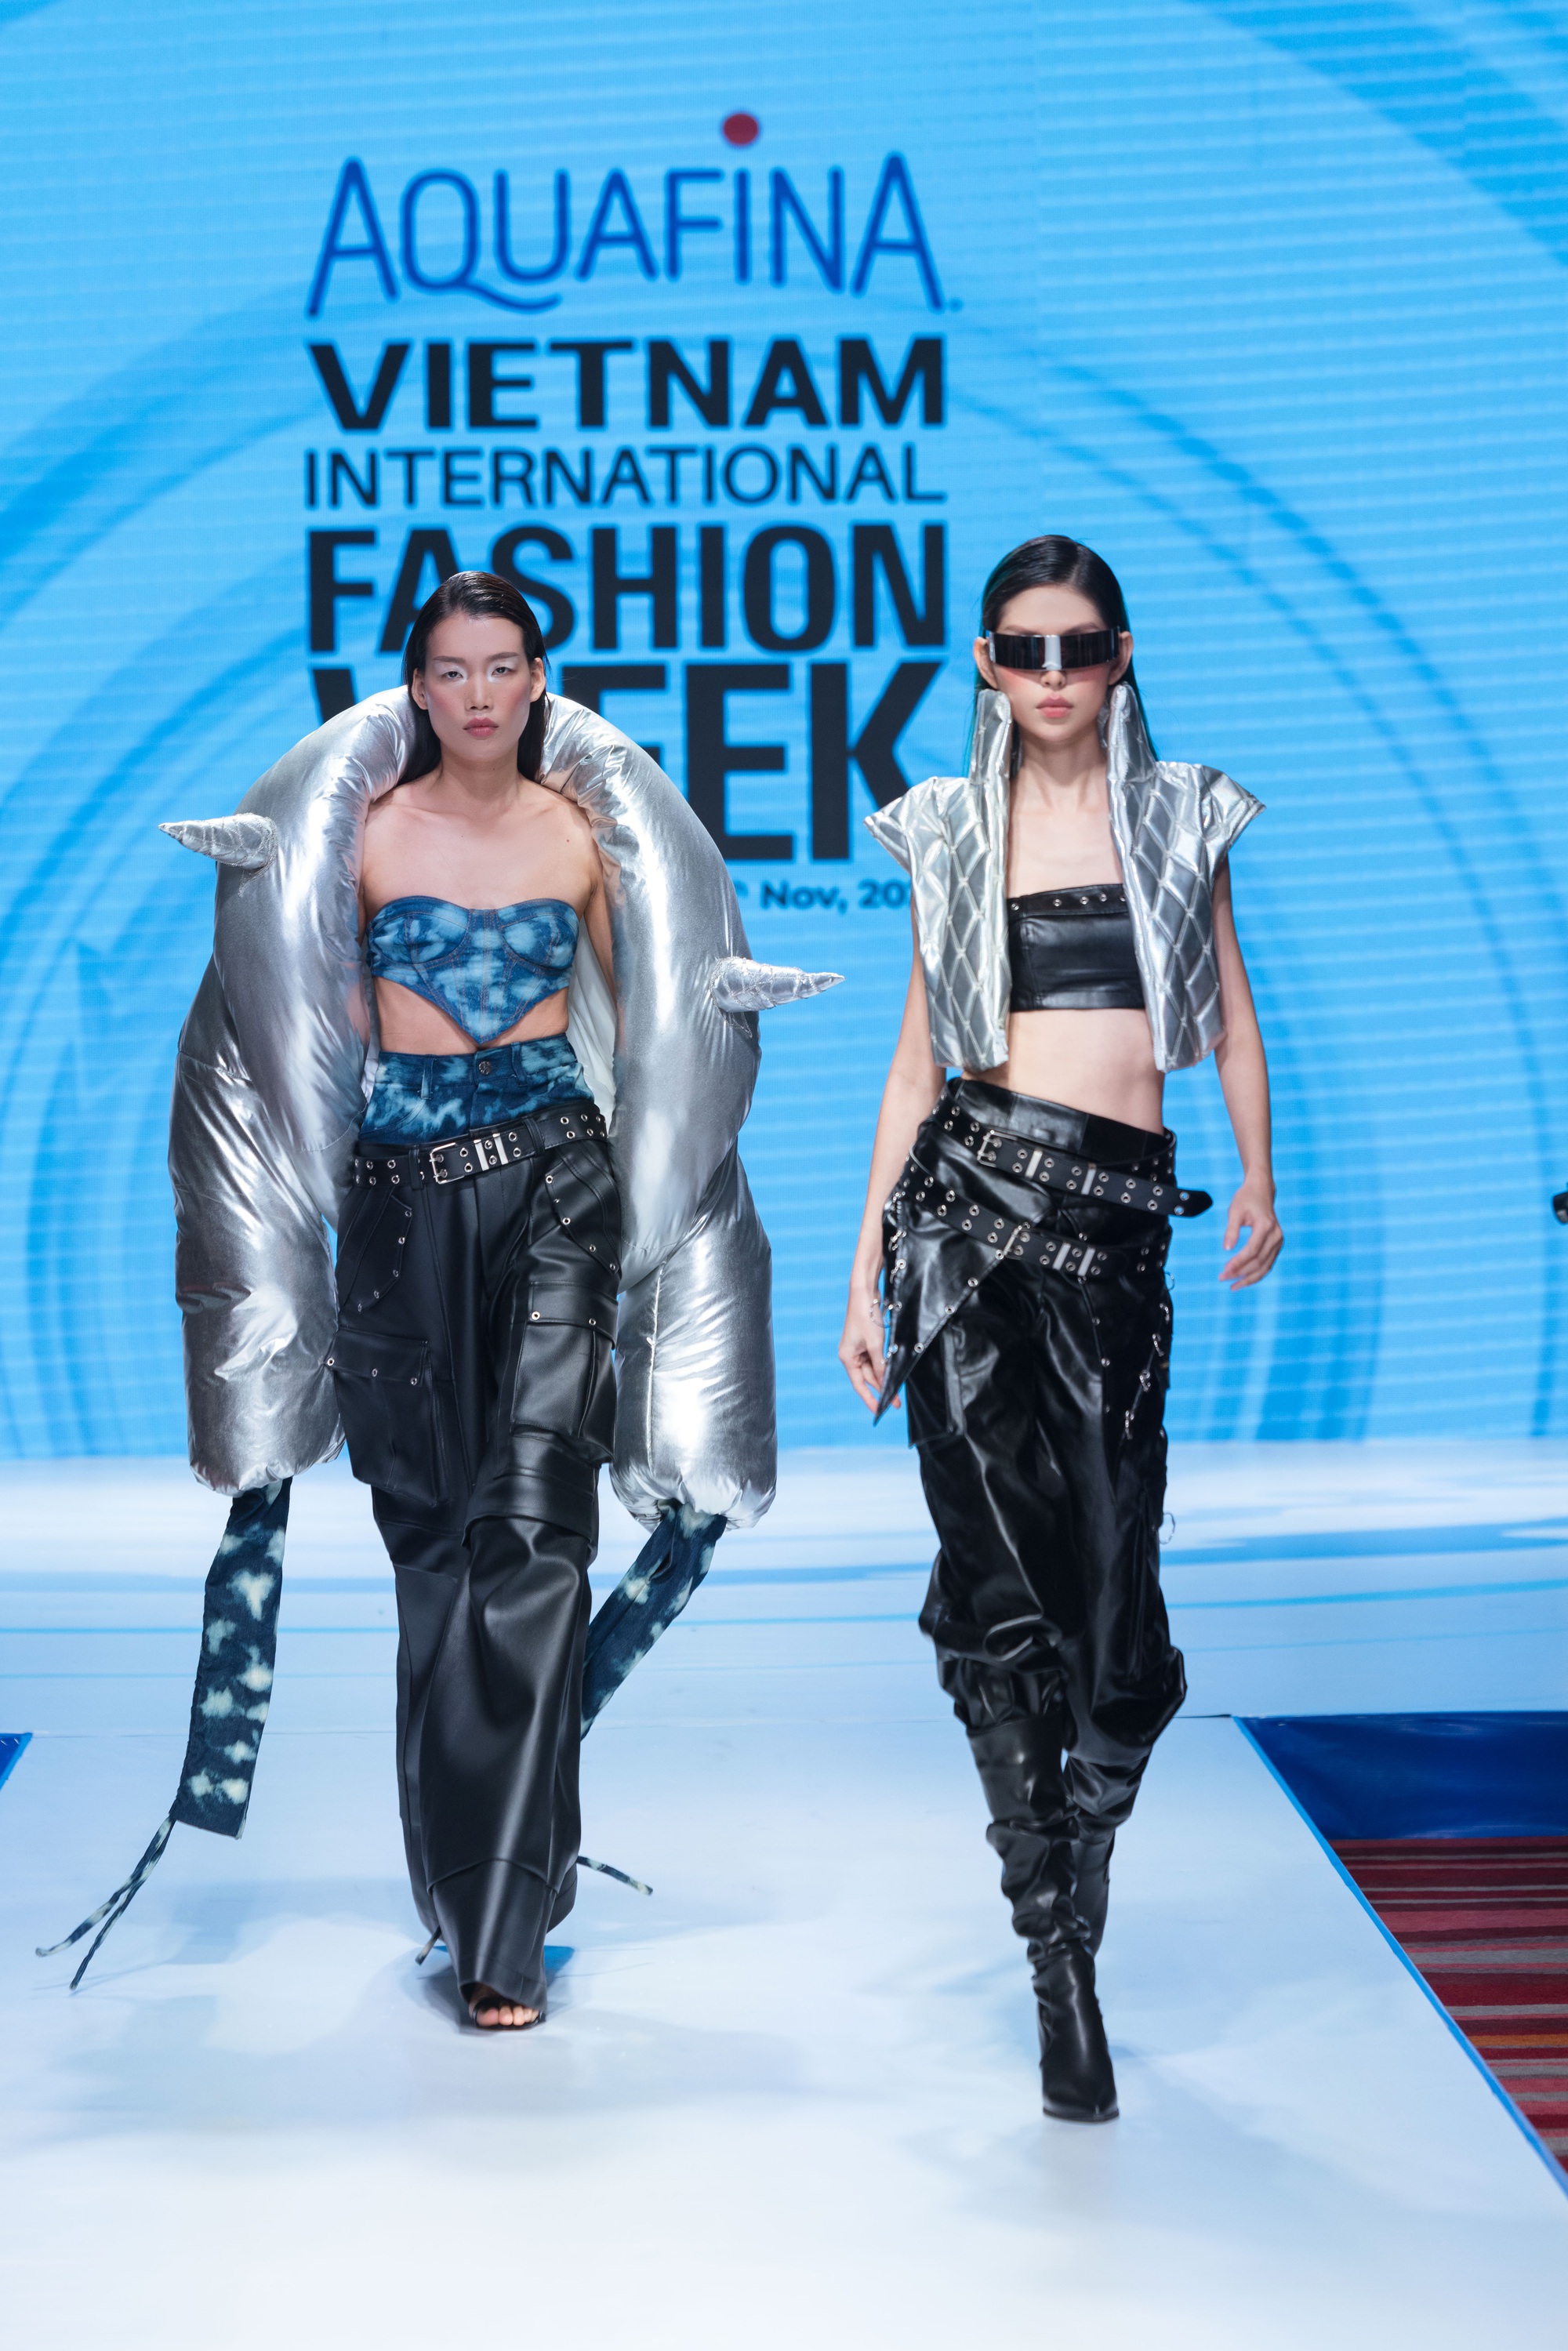 16 nhà thiết kế, thương hiệu sẽ tham dự Aquafina Tuần lễ thời trang Quốc tế Việt Nam - Ảnh 11.